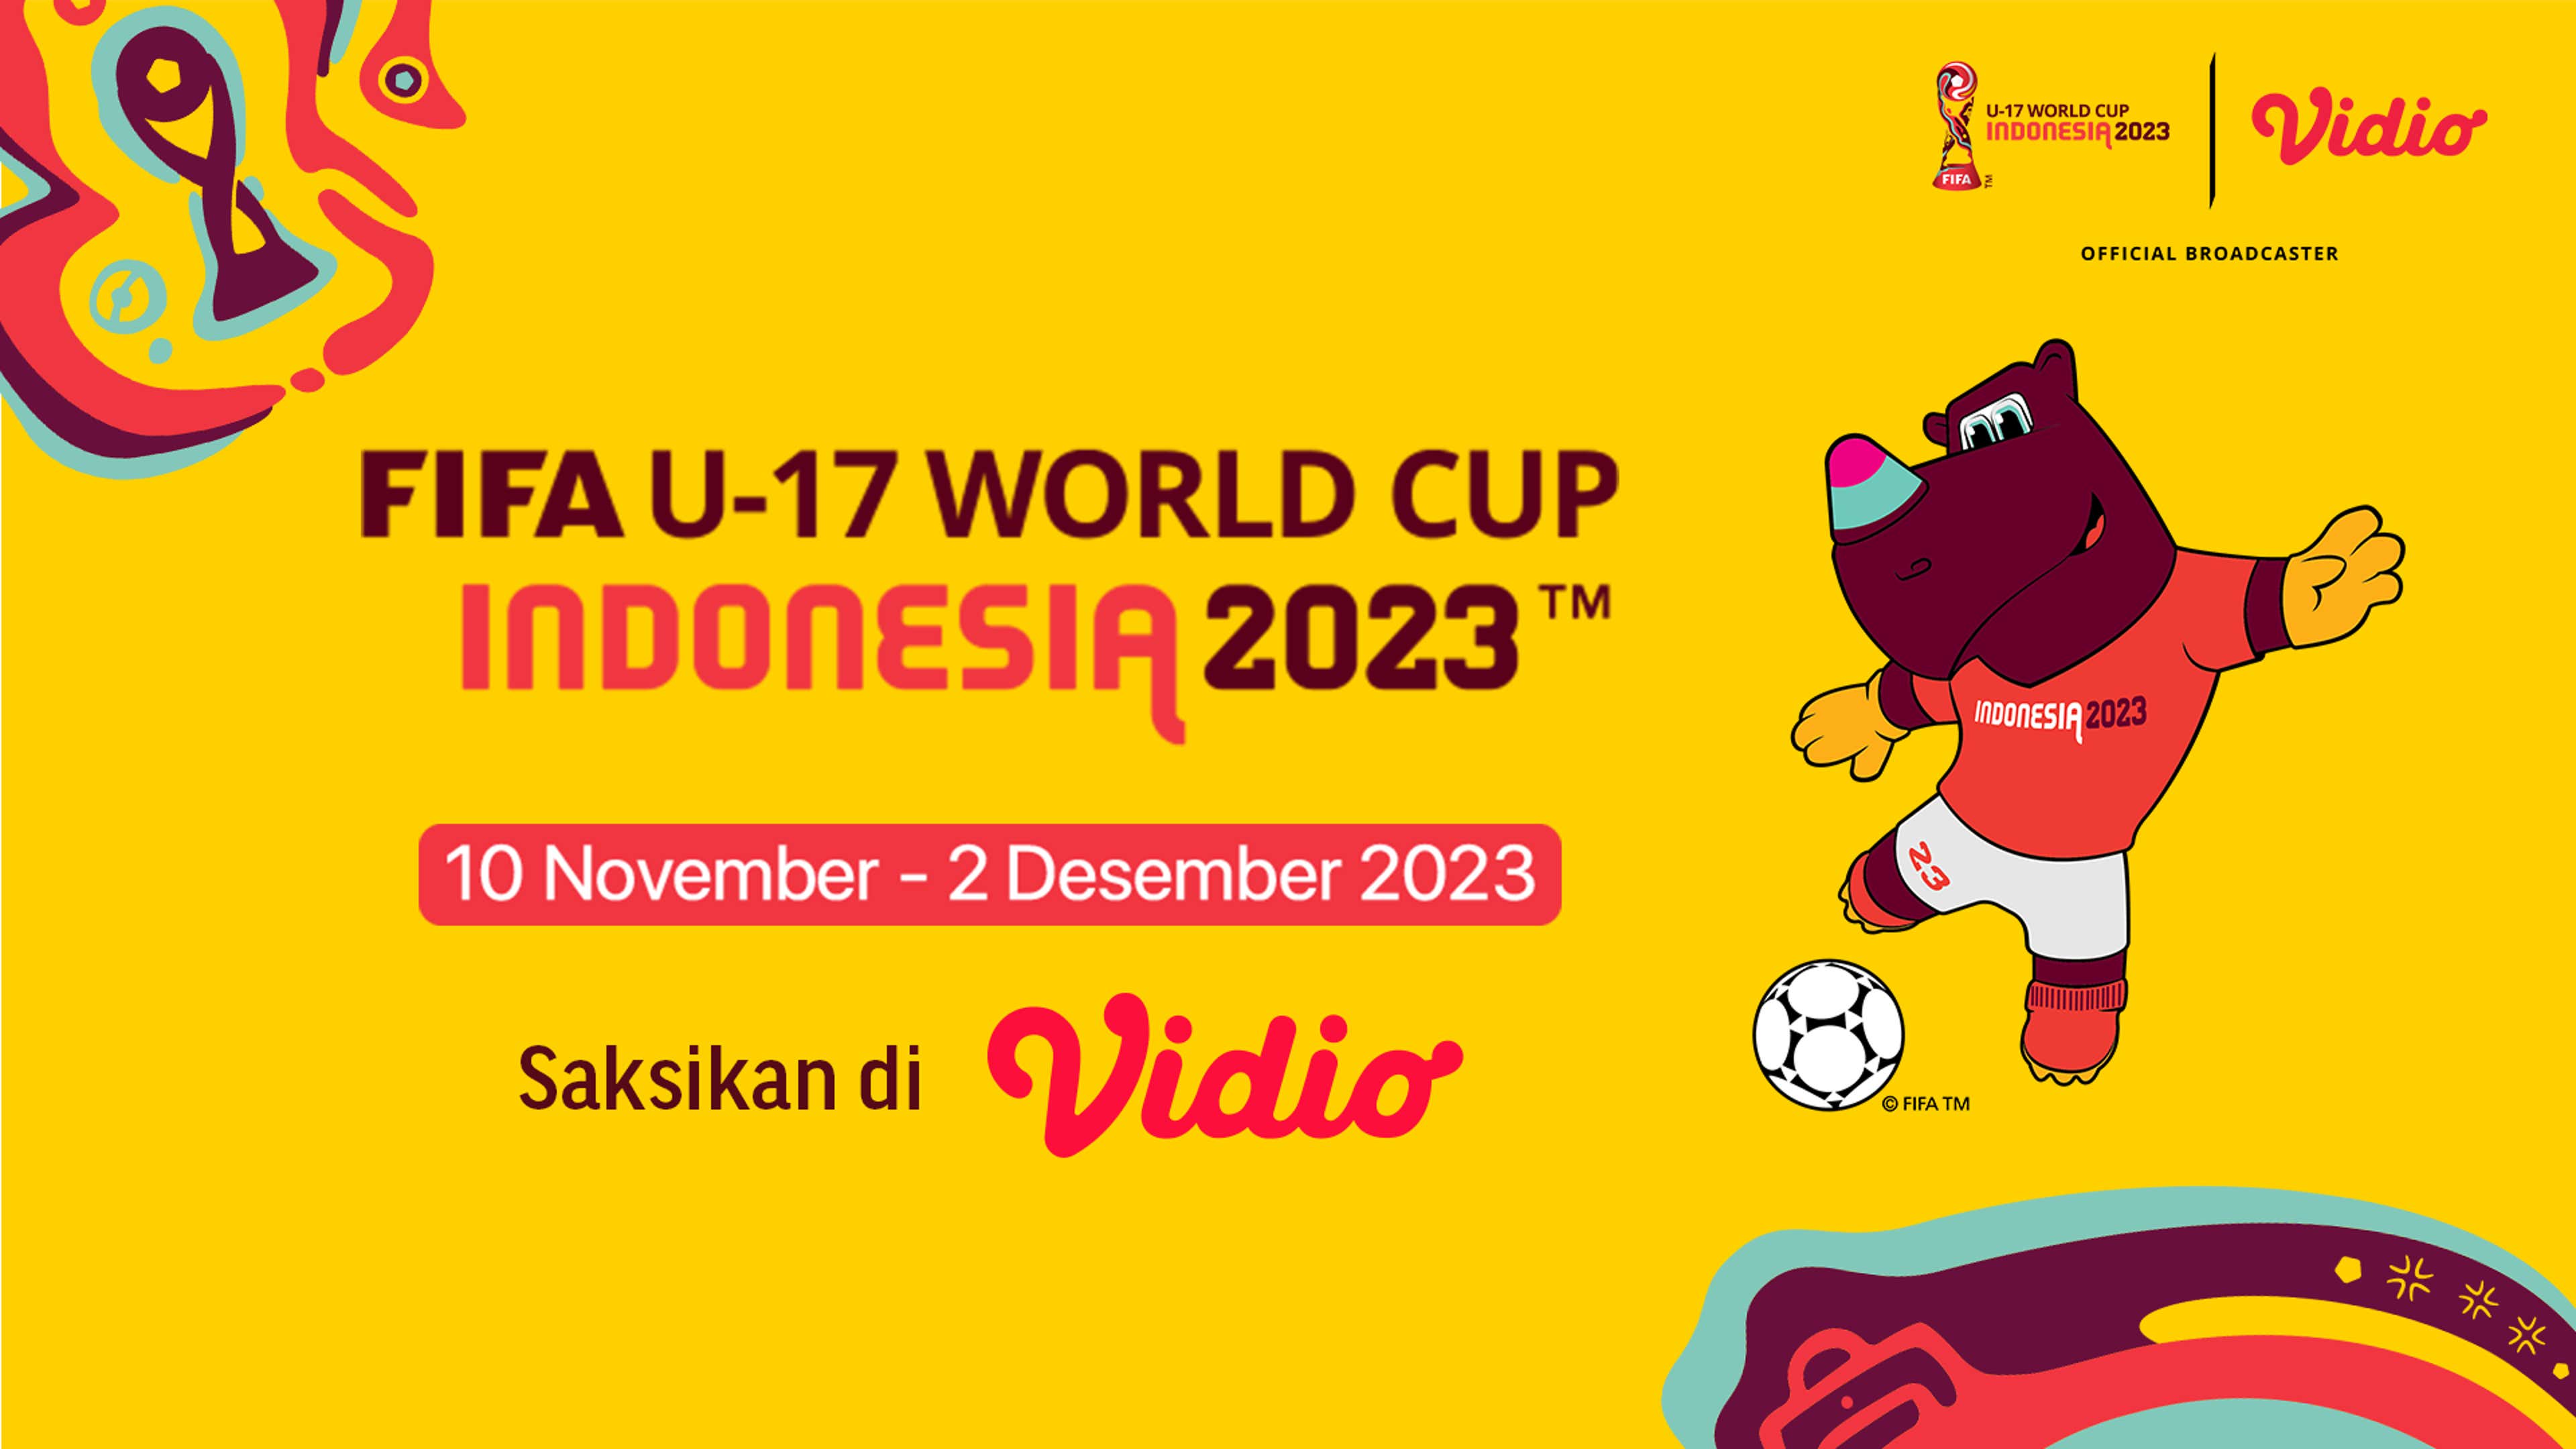 Piala Dunia U-17 2023 Timnas Indonesia: Jadwal TV Lengkap, Live Streaming Vidio, Hasil & Klasemen